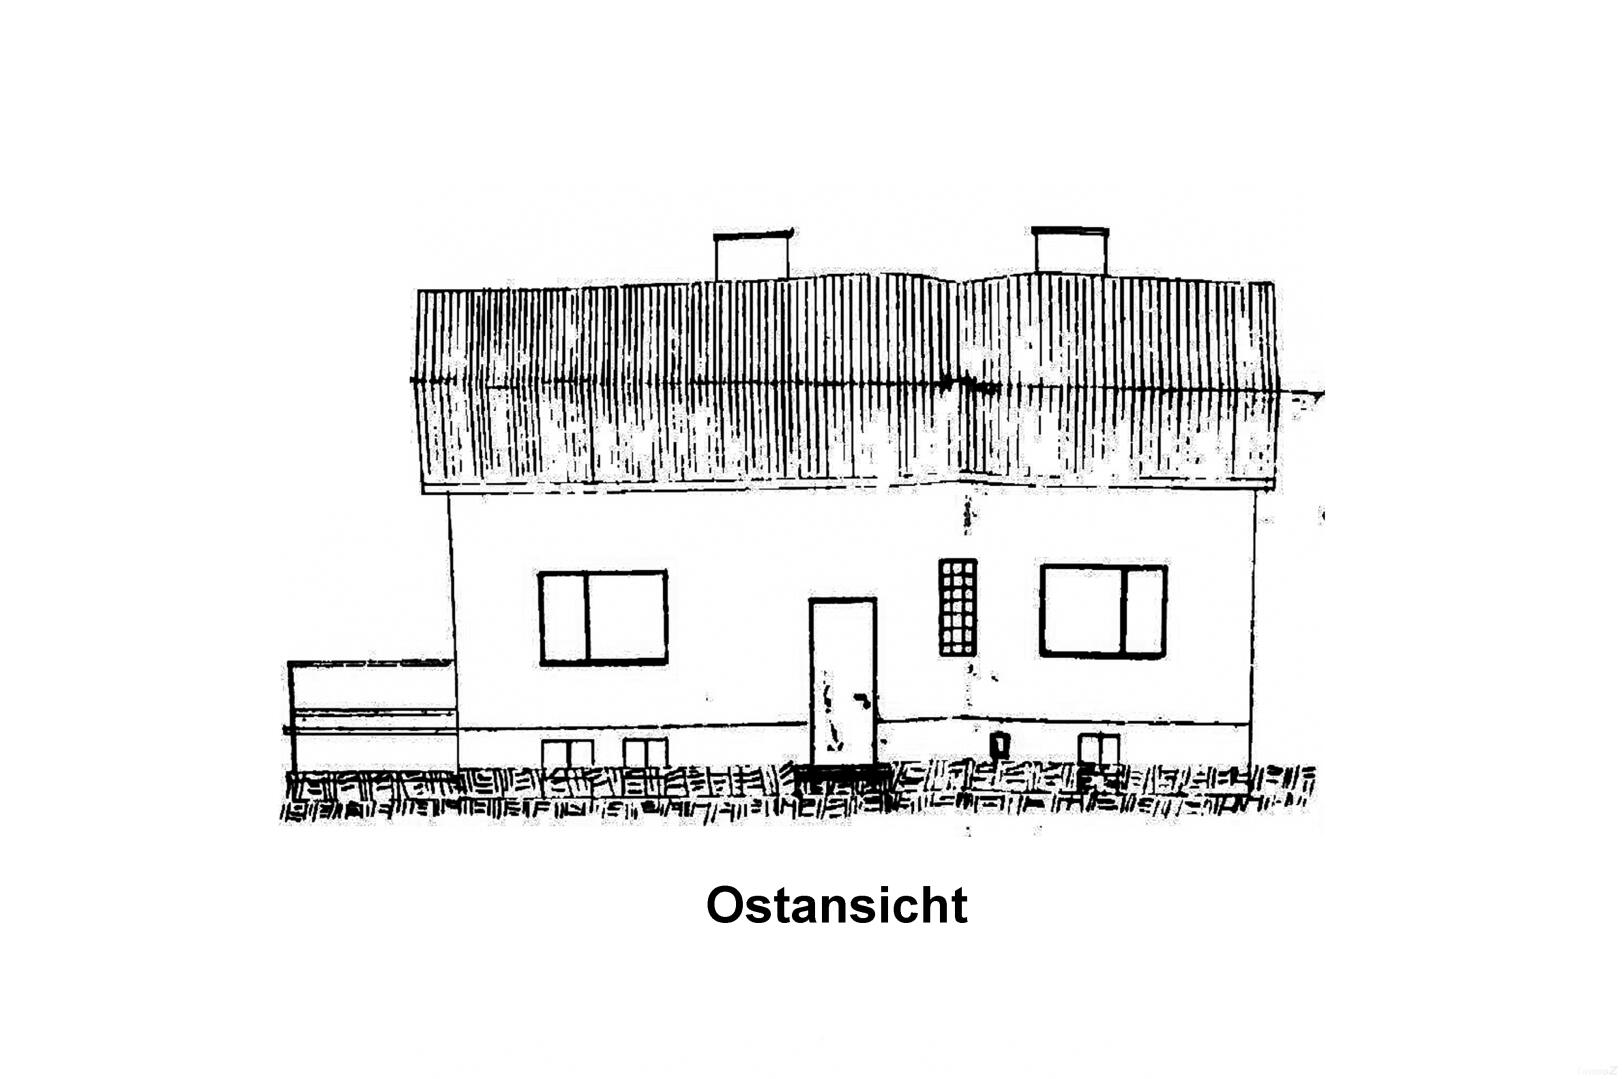 Haus zu kaufen: Eichbergstraße 20, 8046 Eichberg - Ostansicht